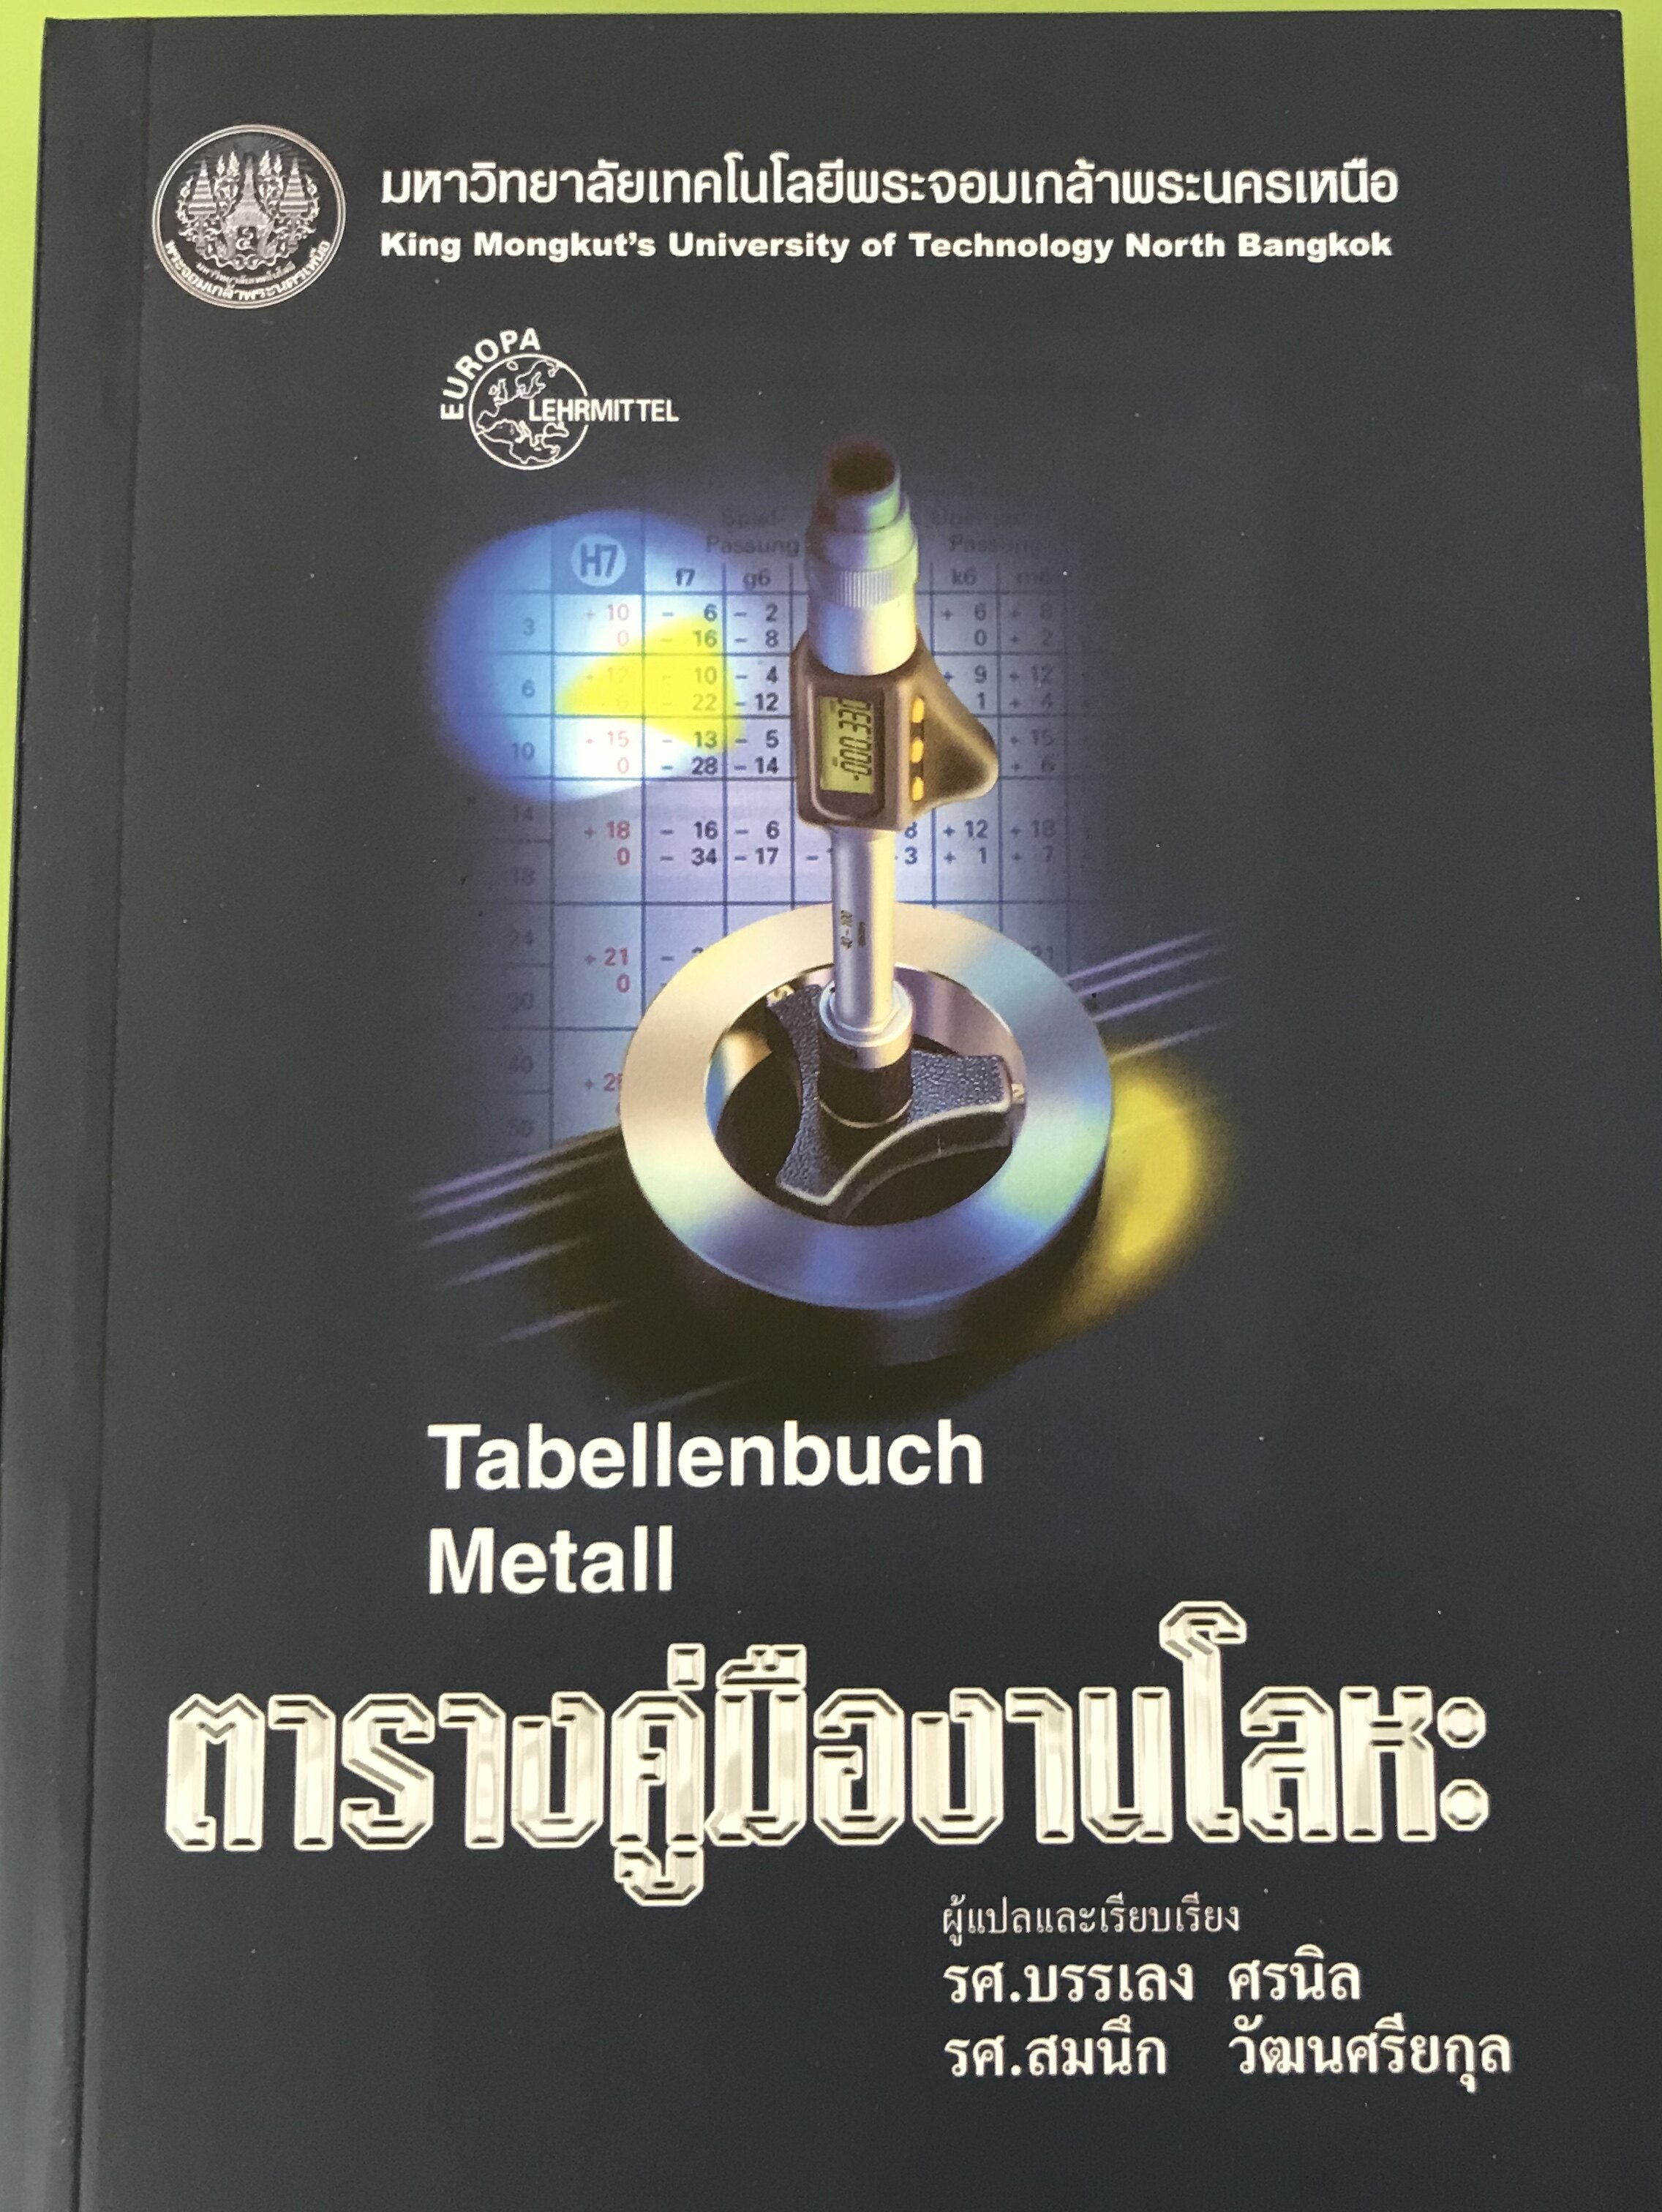 Metall ราคาถูก ซื้อออนไลน์ที่ - เม.ย. 2022 | Lazada.co.th